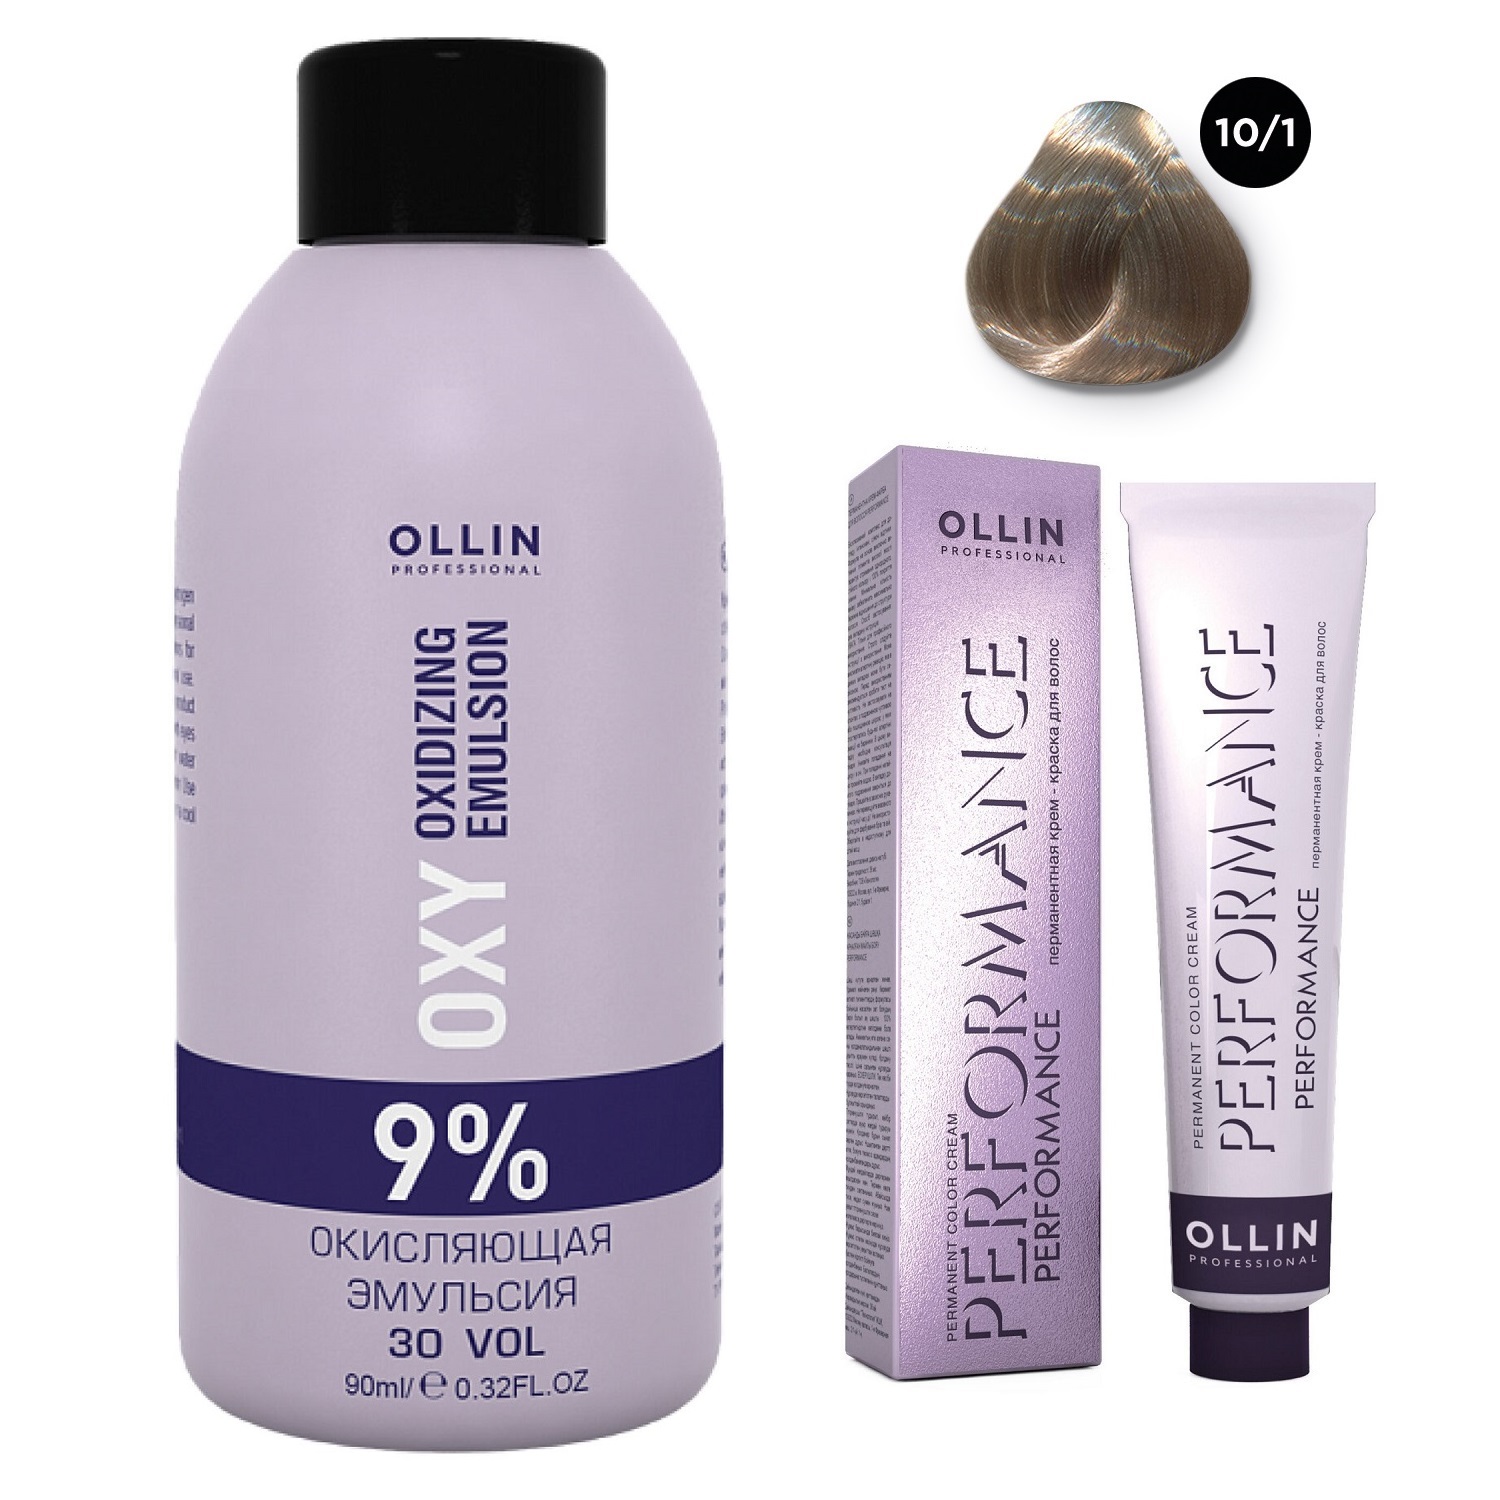 Ollin Professional Набор Перманентная крем-краска для волос Ollin Performance оттенок 10/1 светлый блондин пепельный 60 мл + Окисляющая эмульсия Oxy 9% 90 мл (Ollin Professional, Performance)